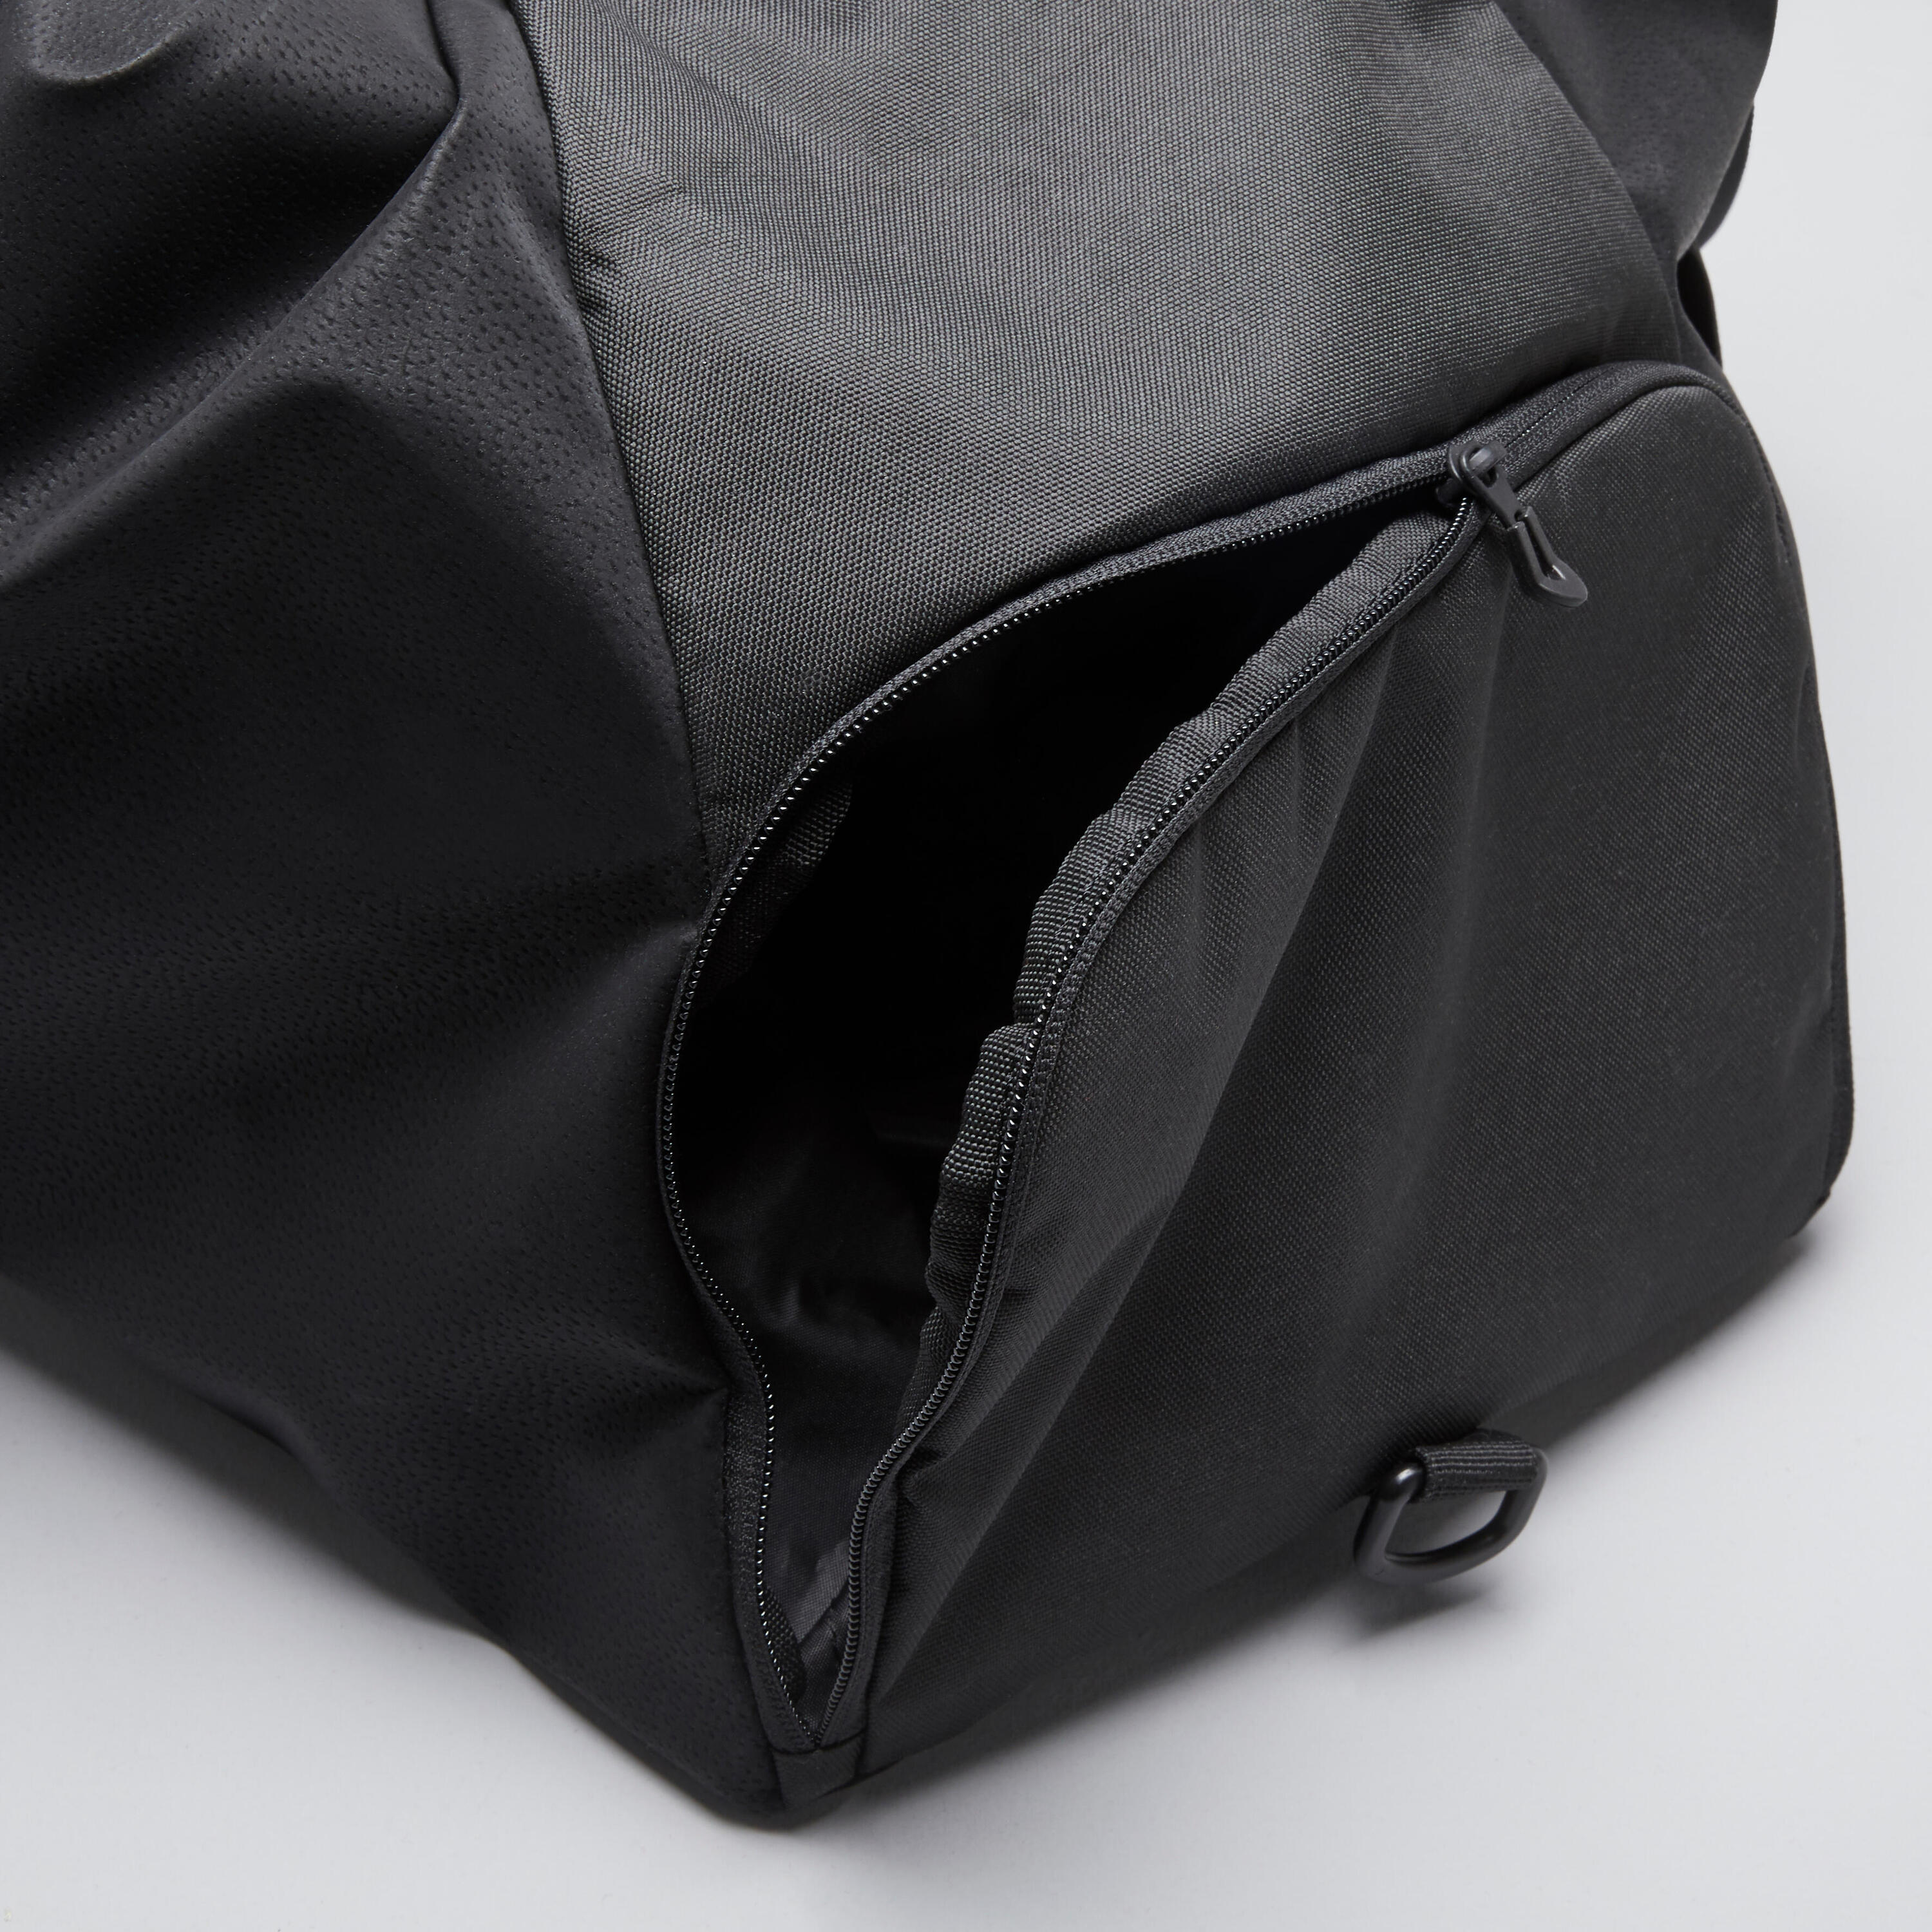 An Elegant Training Bag Designed For Both Men And Women 3/9